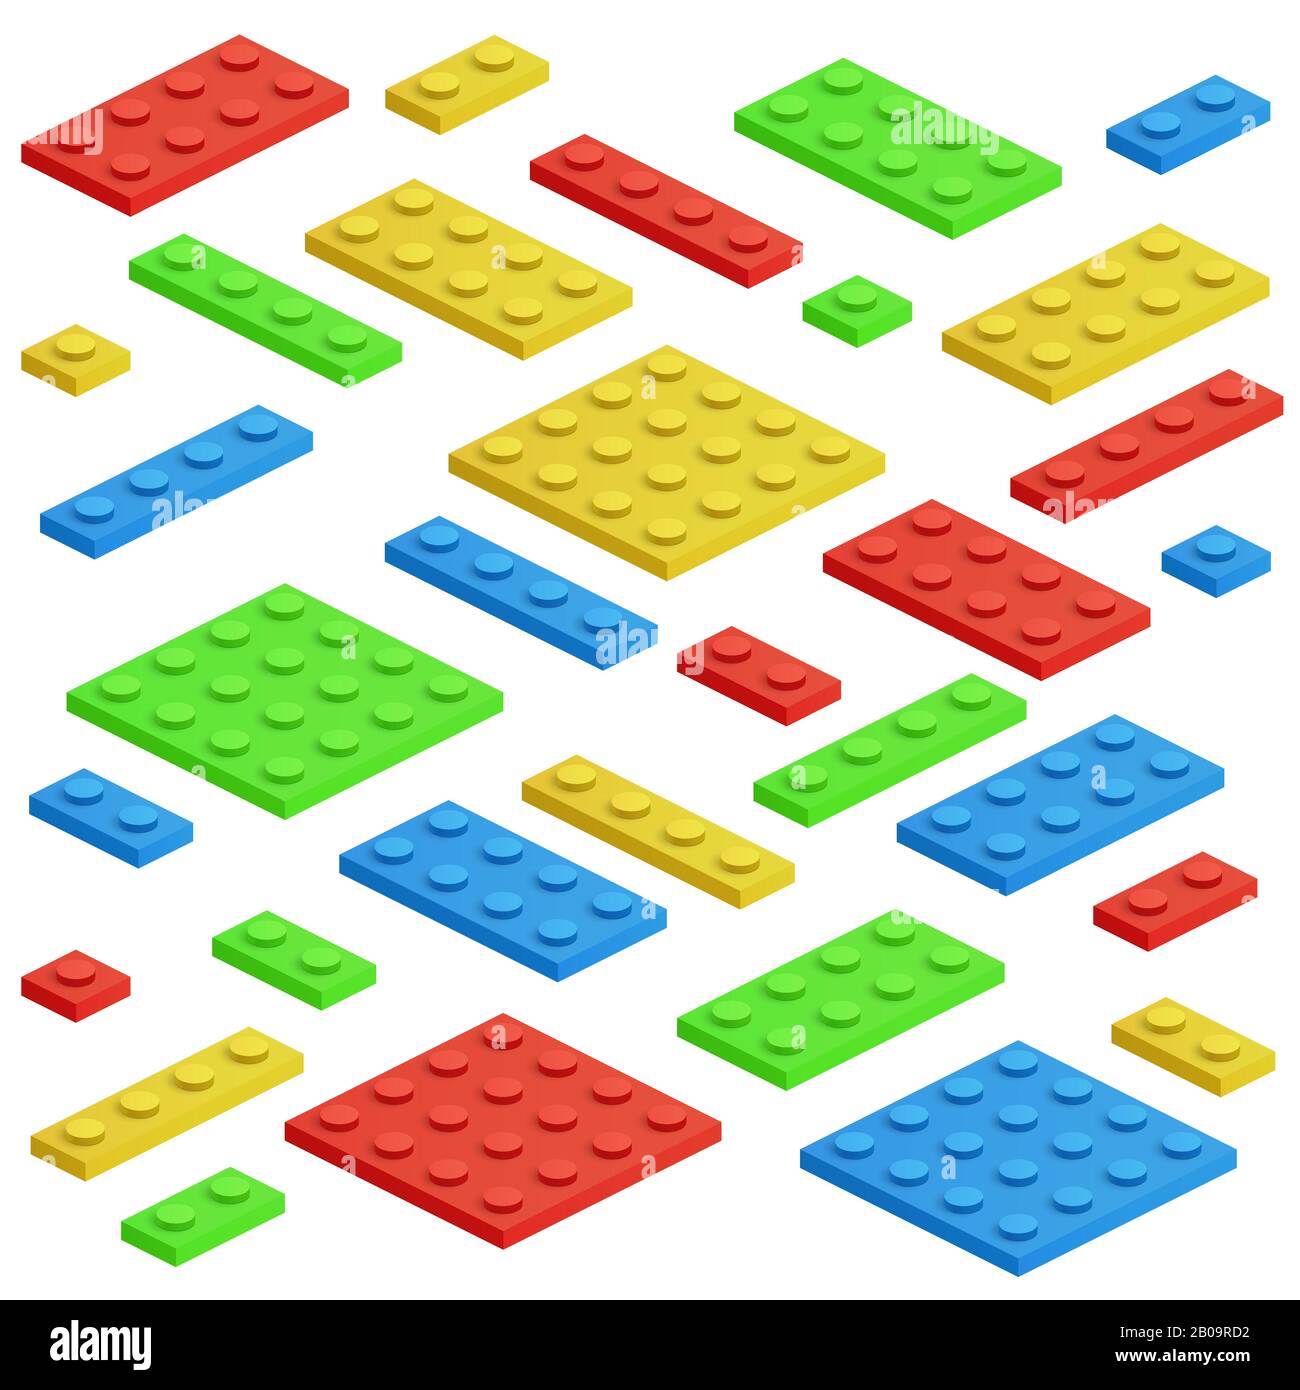 Bloc de construction isométrique, jeu de vecteurs en briques pour enfants jouets. Construction de blocs de jouets, illustration de jouets en cube pour le jeu Illustration de Vecteur